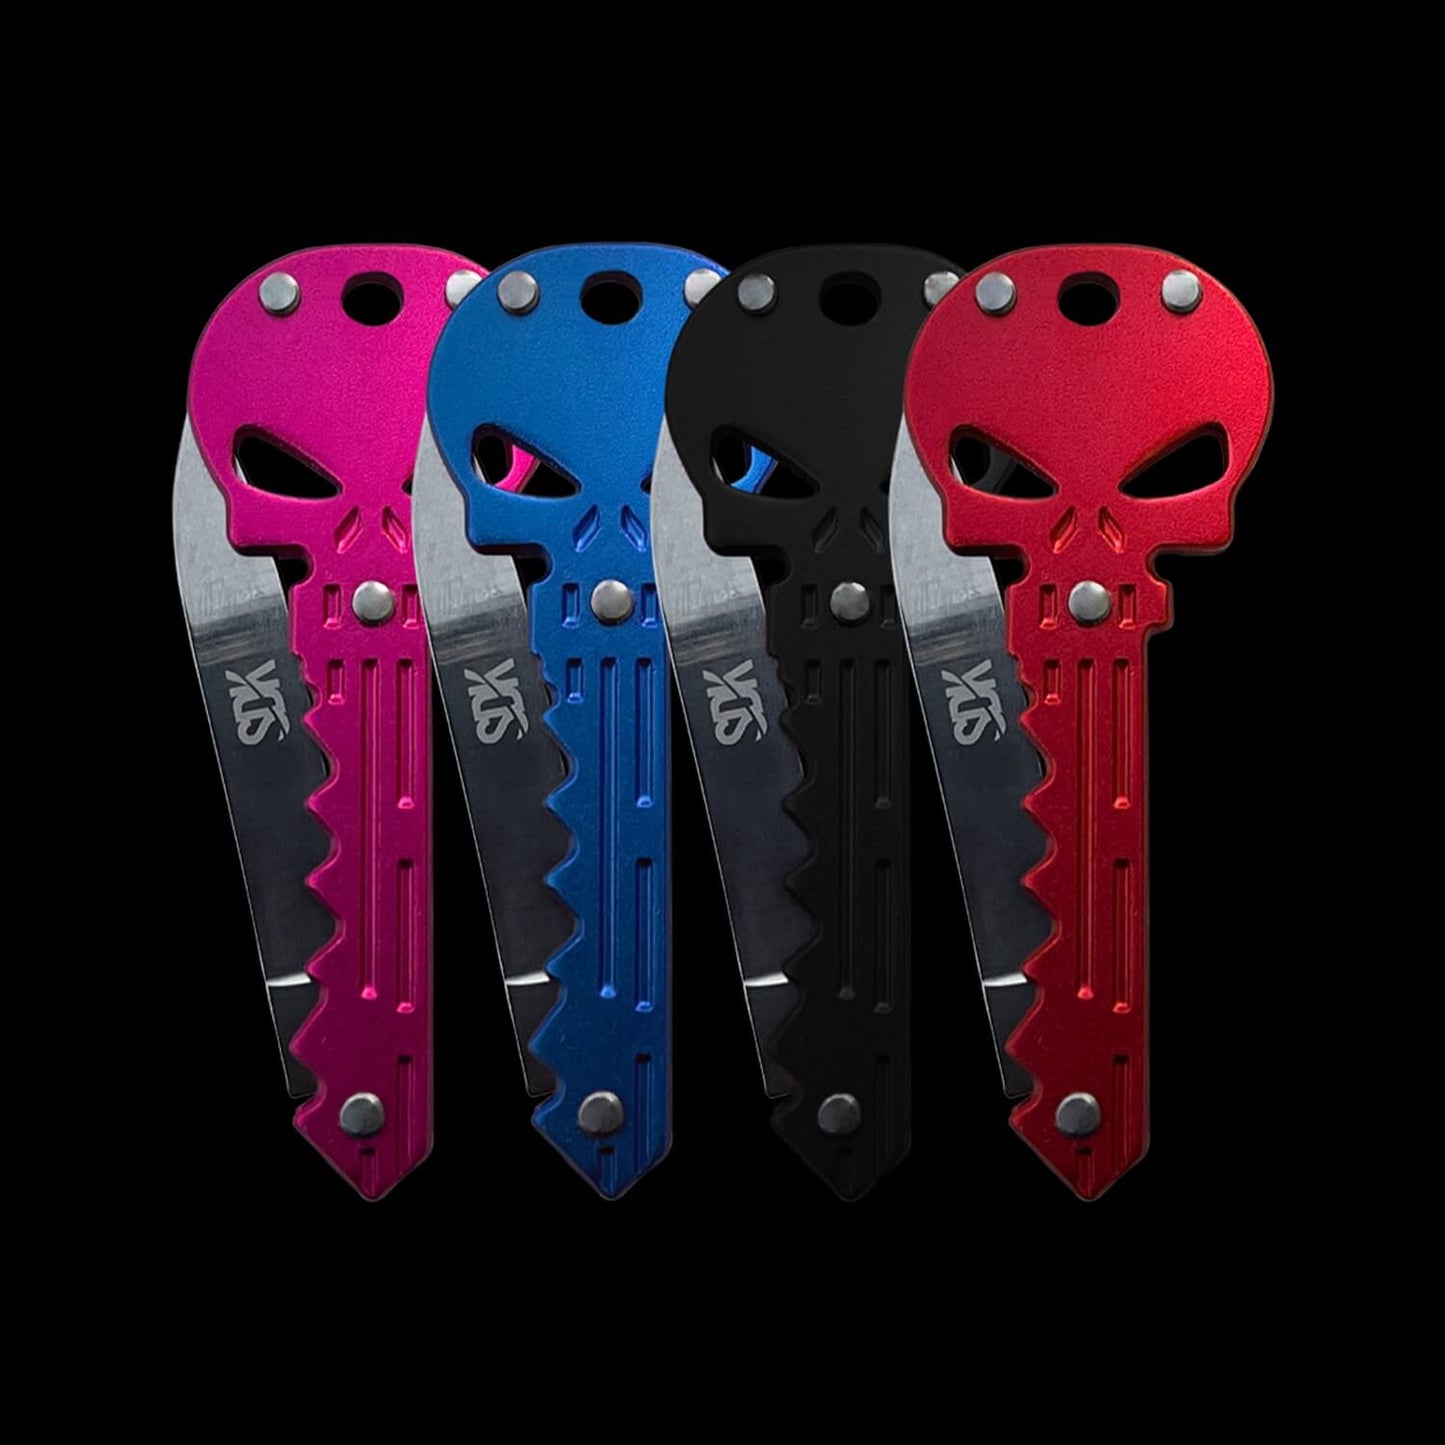 SDK Skull Knife, Pink, Blue, Black and Red (stainless steel skull-shaped flip knife)